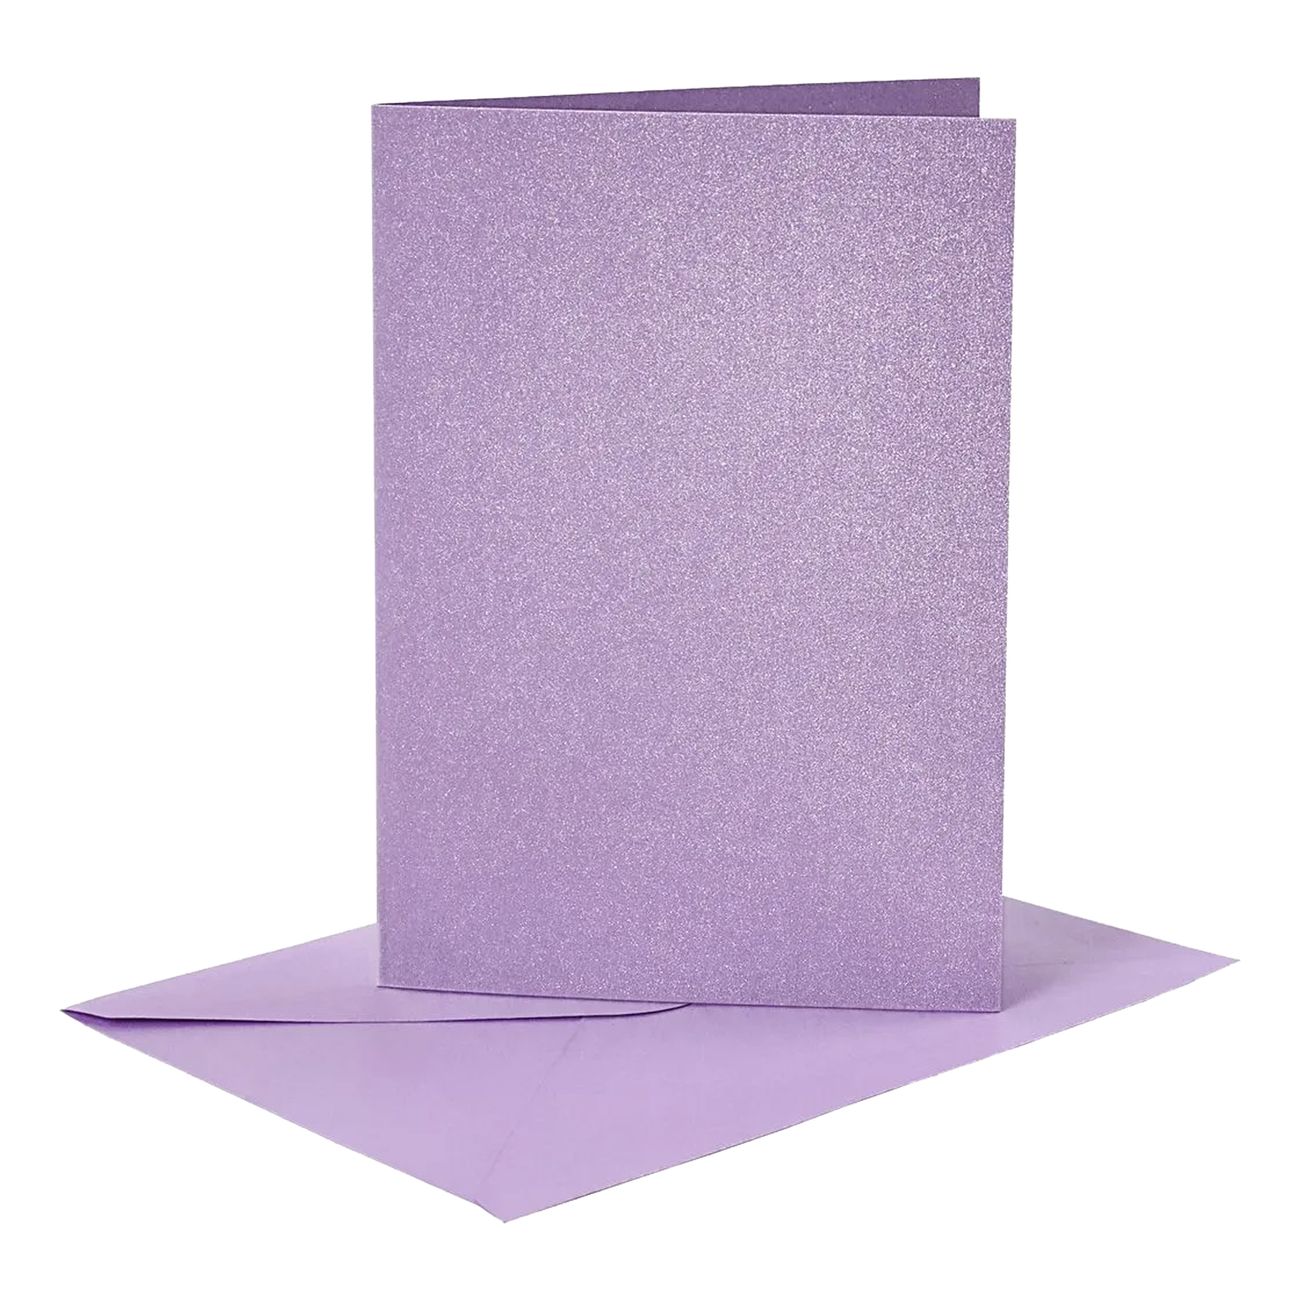 kort-med-kuvert-lila-glittrigt-86533-1